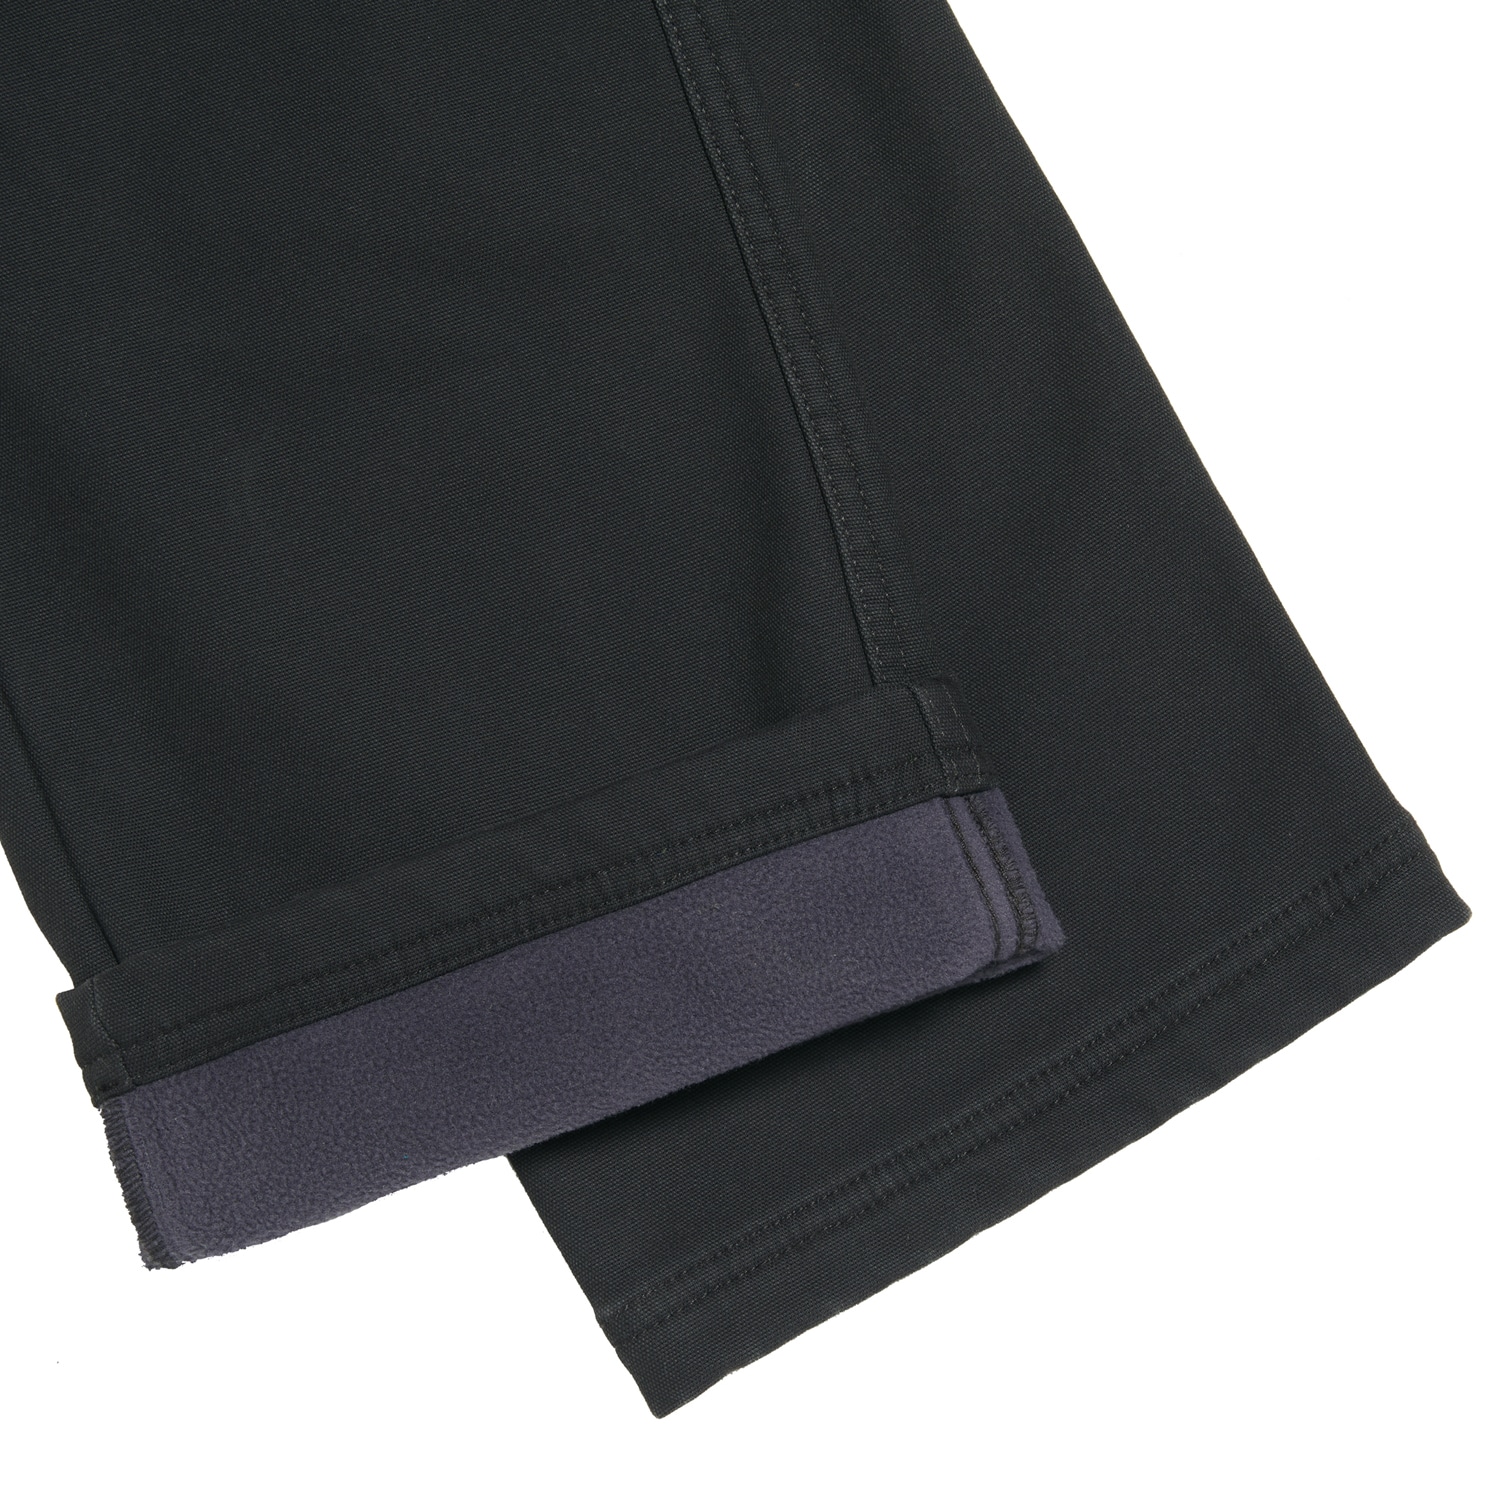 Coleman Men's Fleece Lined Bonded Utility Pants - 34 X 30 Greige NEW